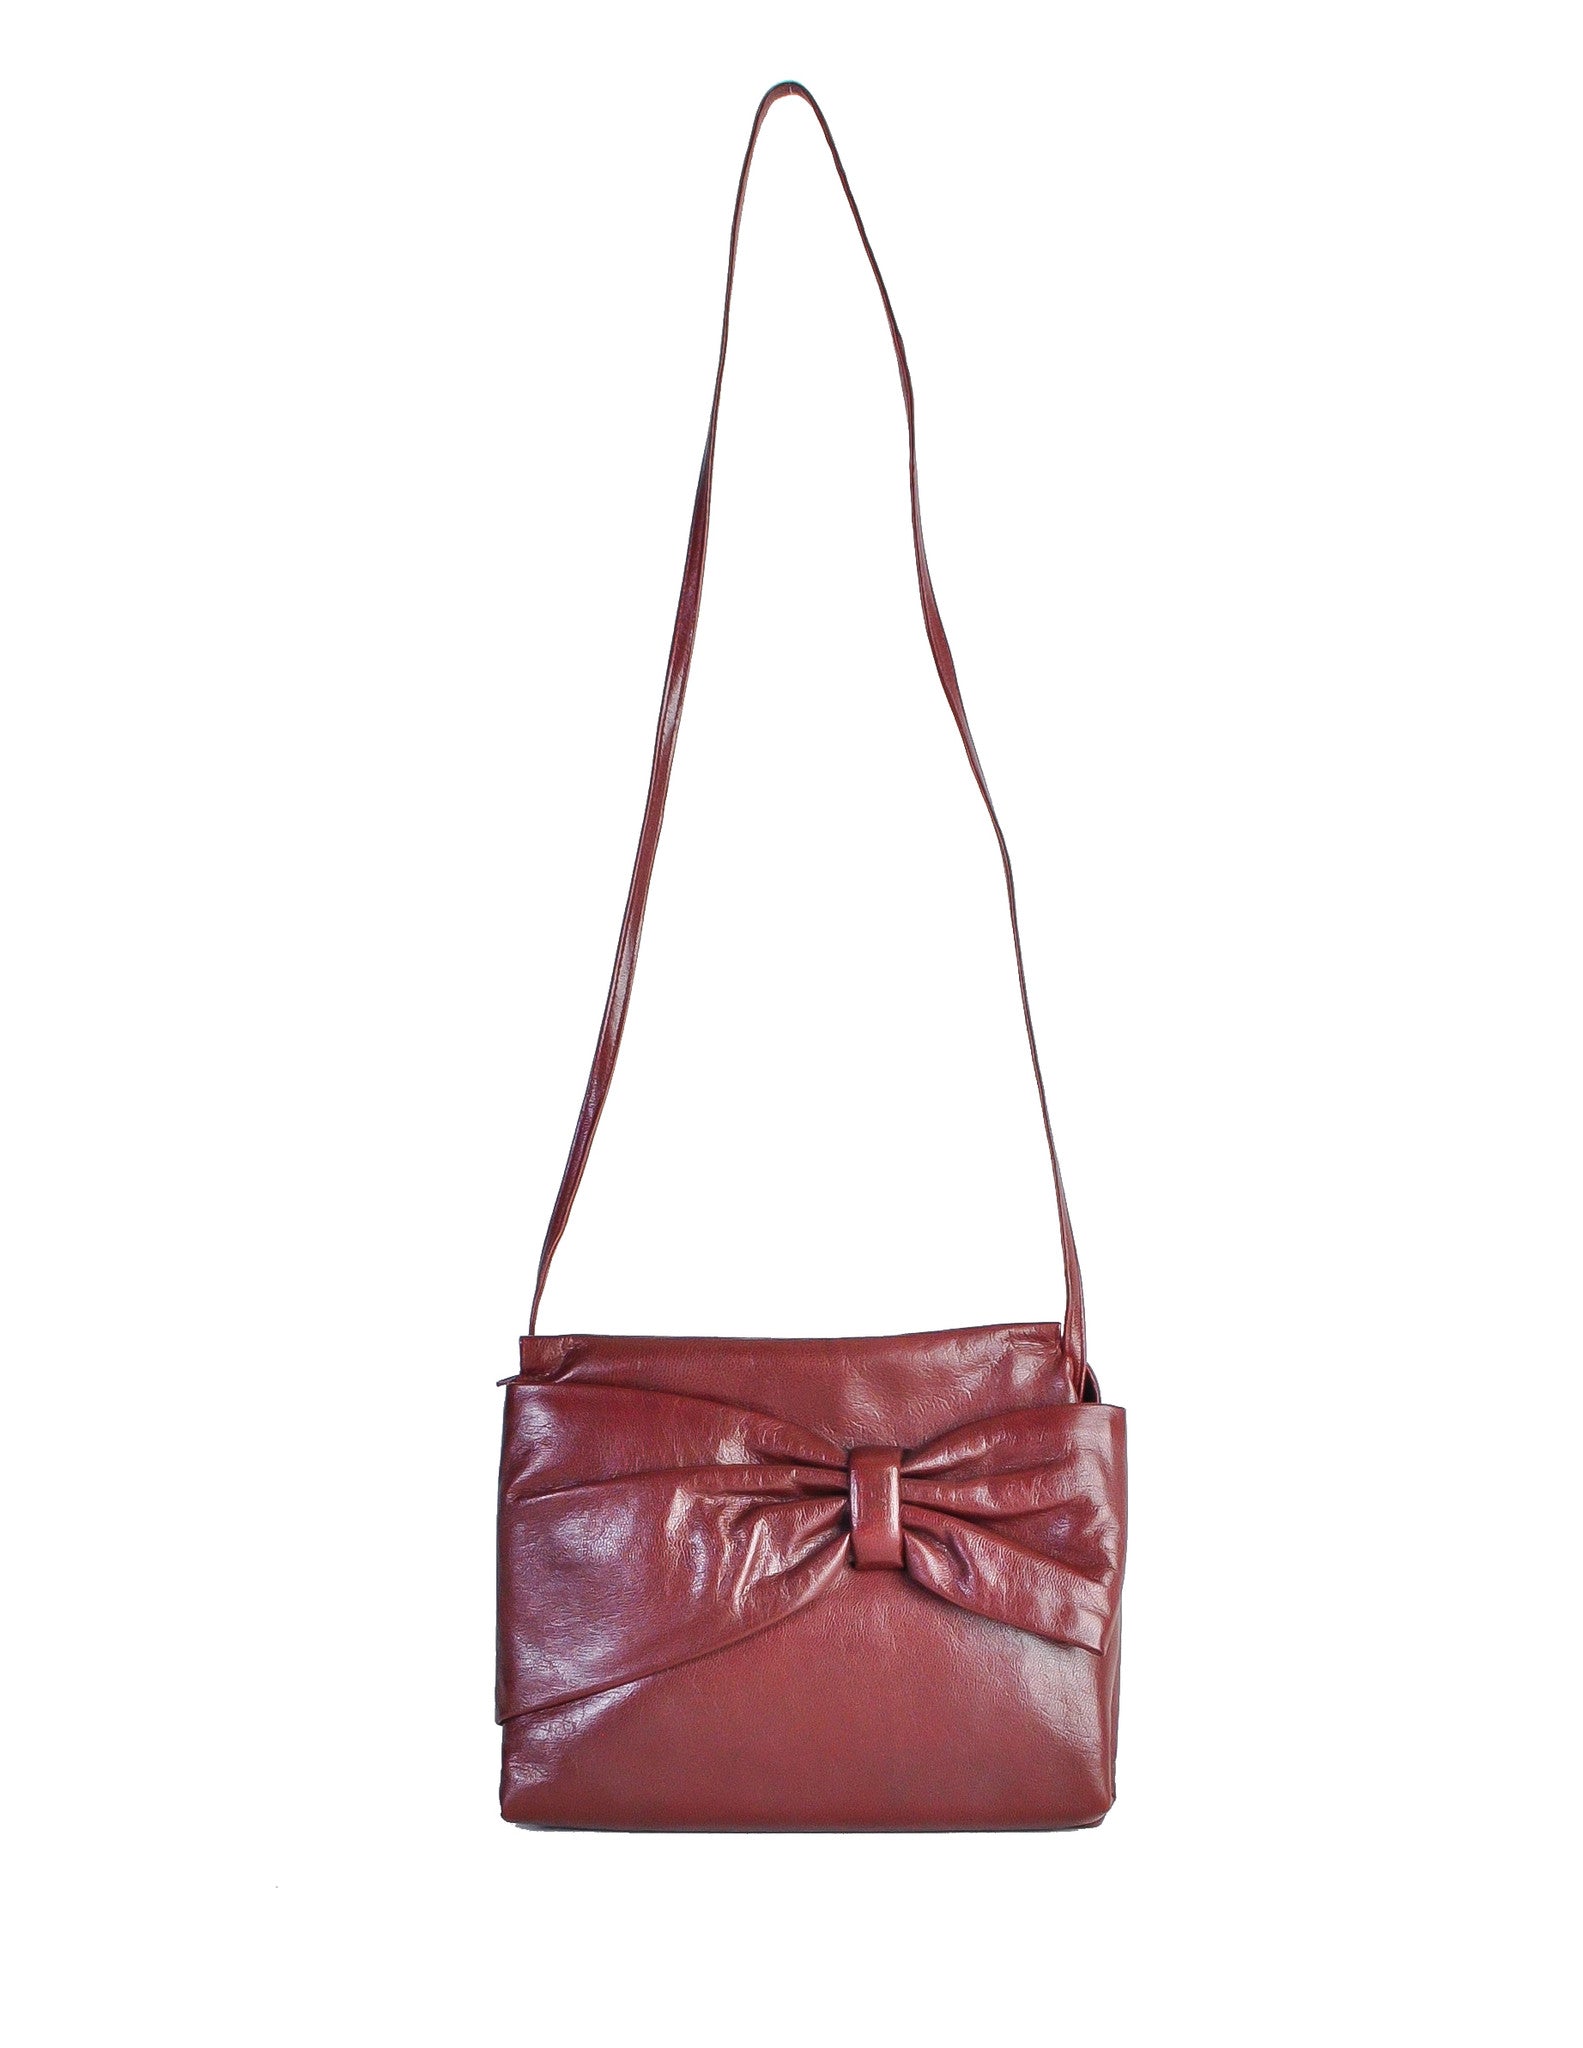 Fendi Vintage Burgundy Leather Bow Front Bag